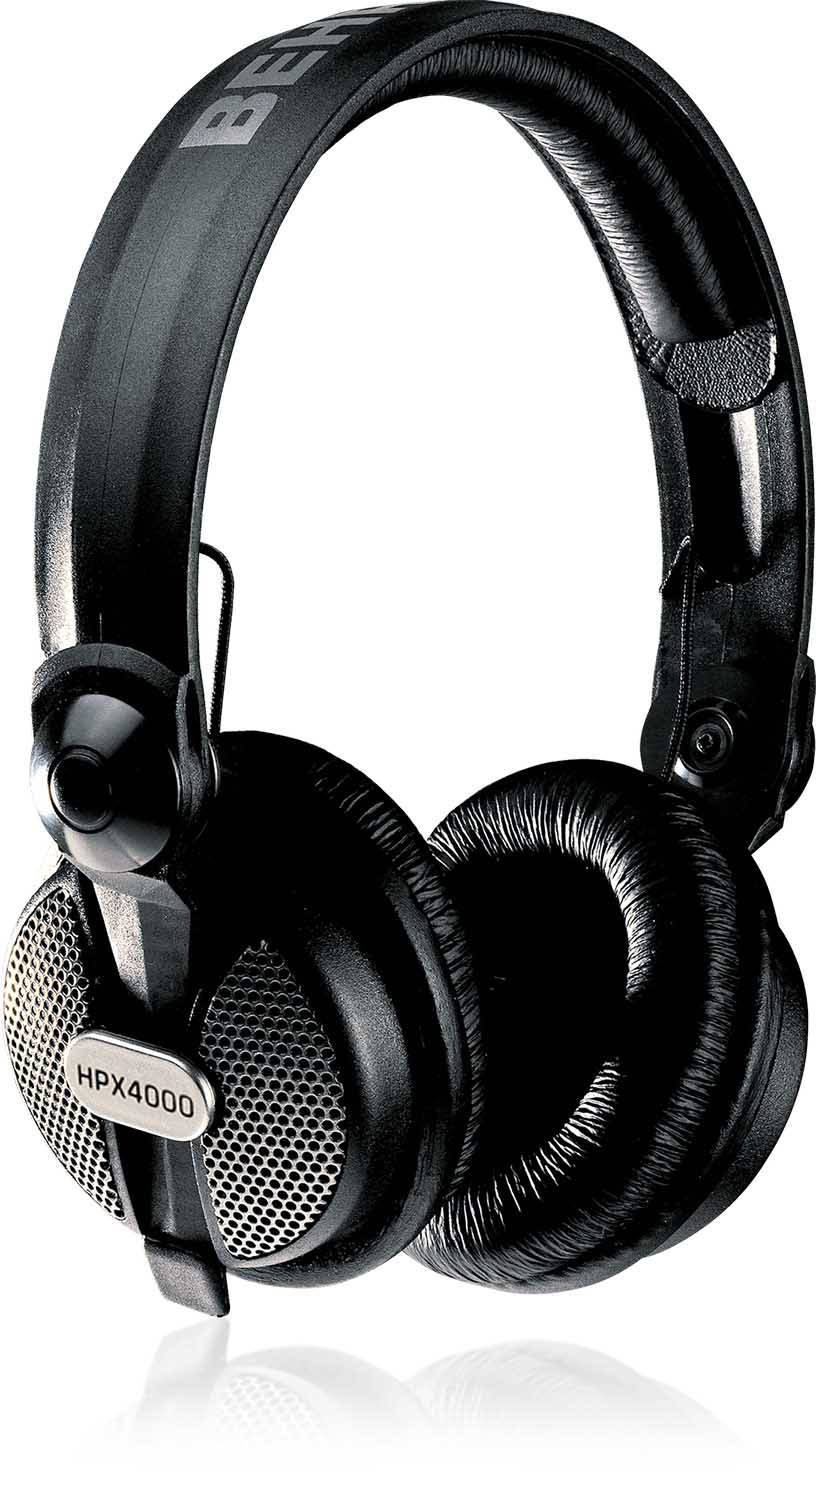 Behringer HPX4000 Closed Type High Definition DJ Headphones - Black - Hollywood DJ